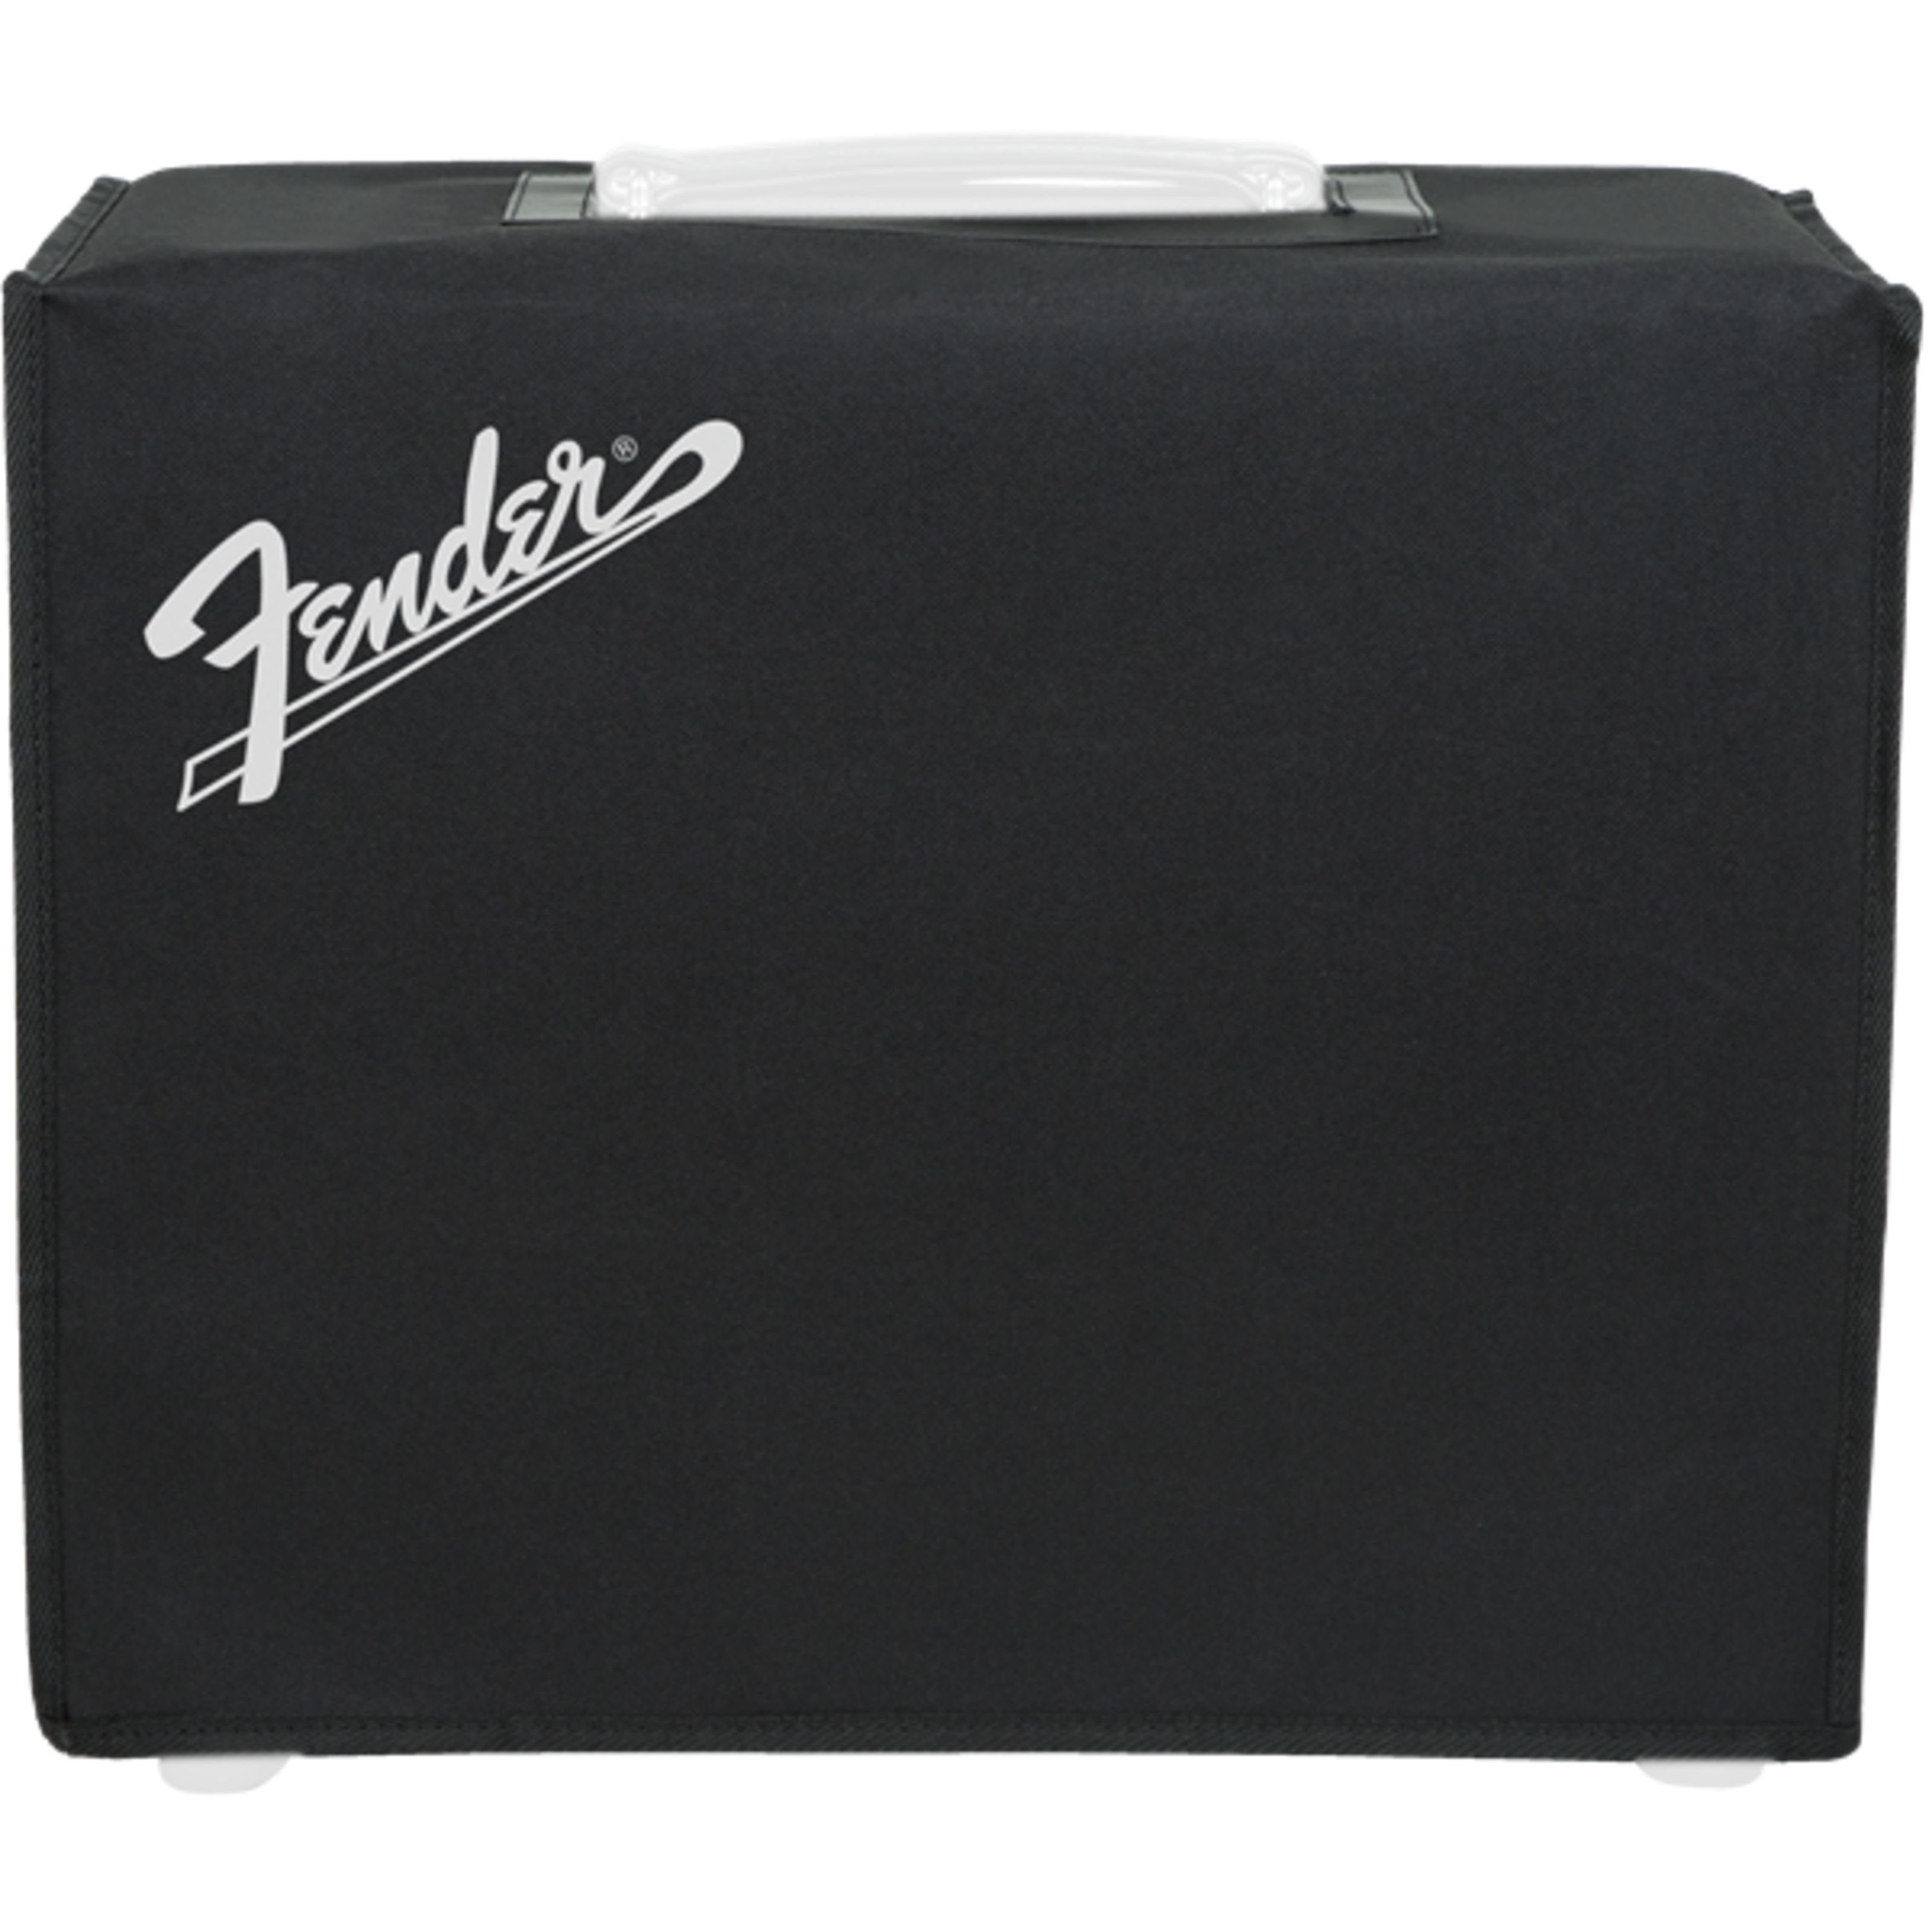 Fender Lautsprechertasche (Amp Cover LT50 - Cover for Guitar Equipment, E-Gitarren Verstärker, Amp und Boxen Cover), Amp Cover Mustang LT50 - Cover für Gitarren Equipment